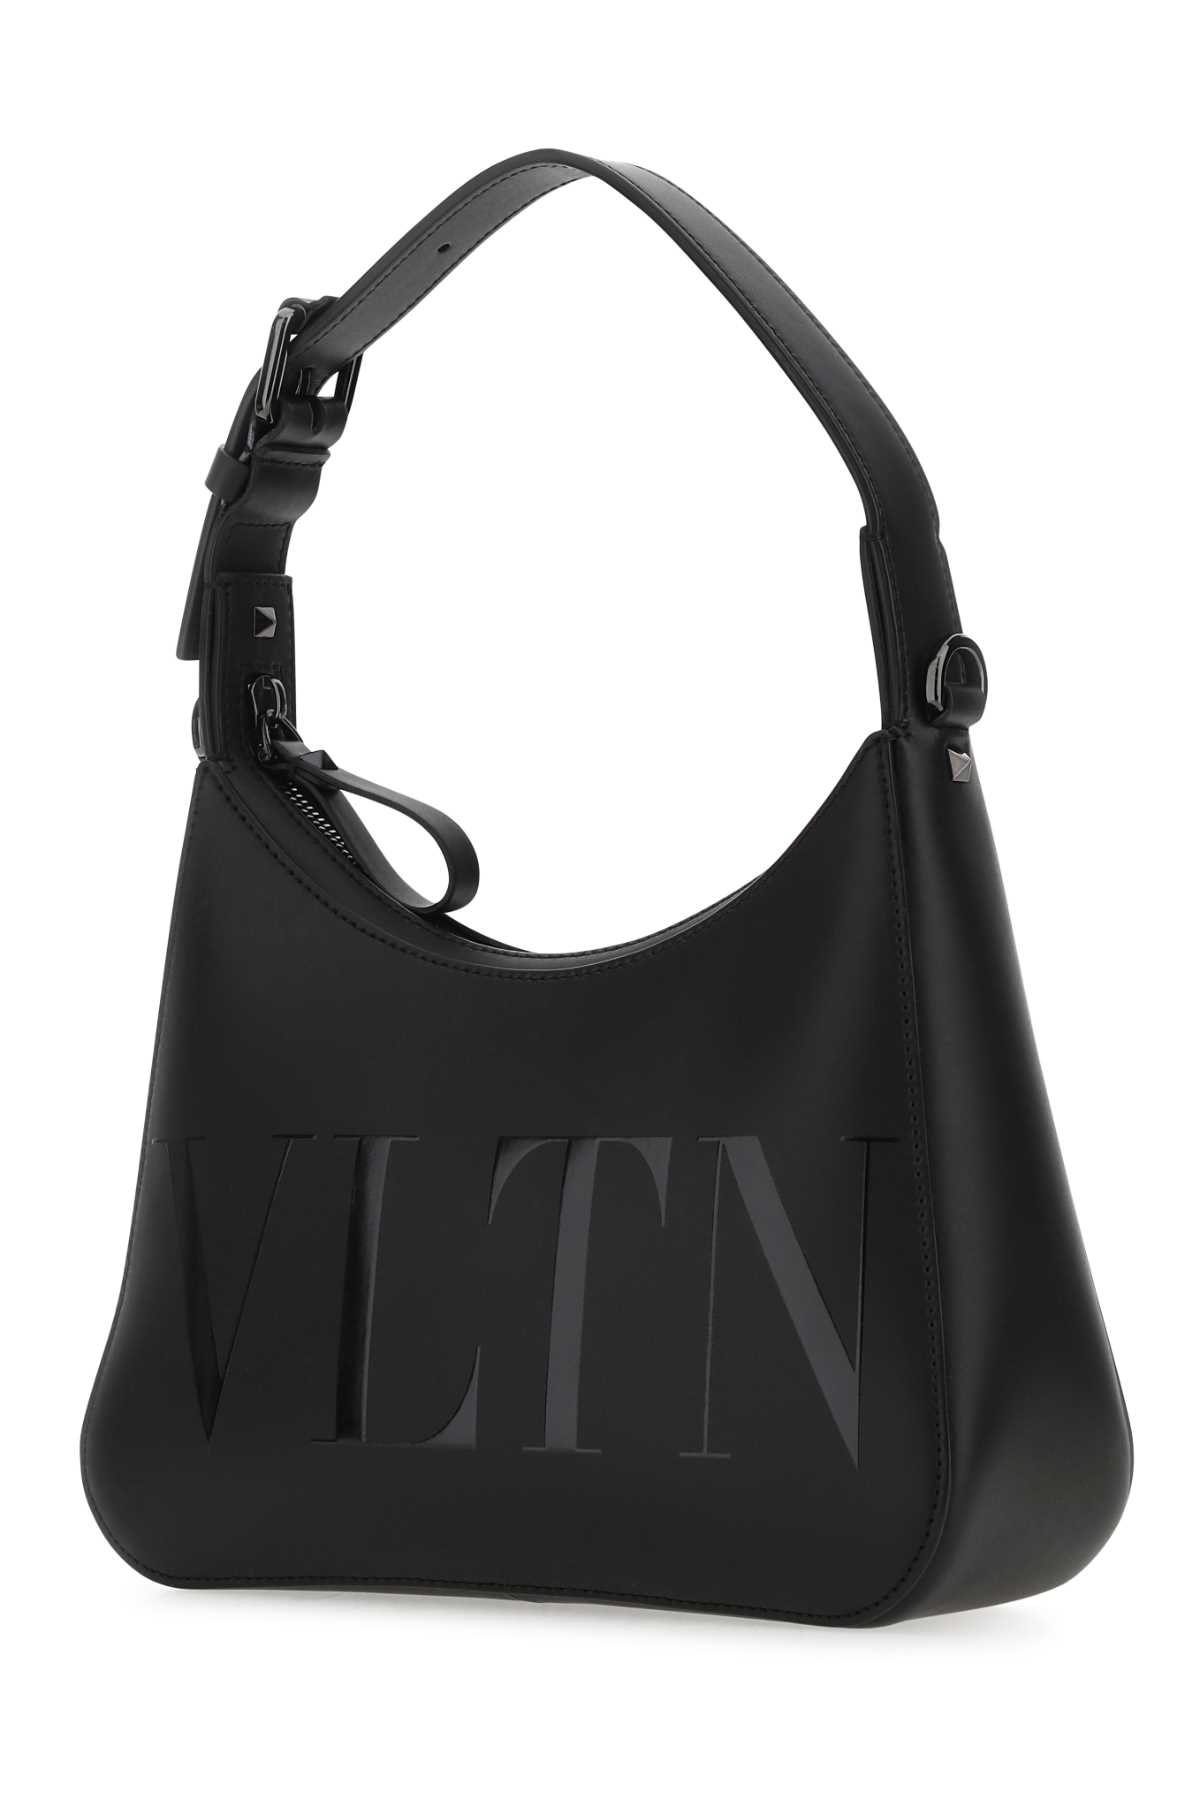 Valentino Garavani Black Leather Vltn Handbag In 0no